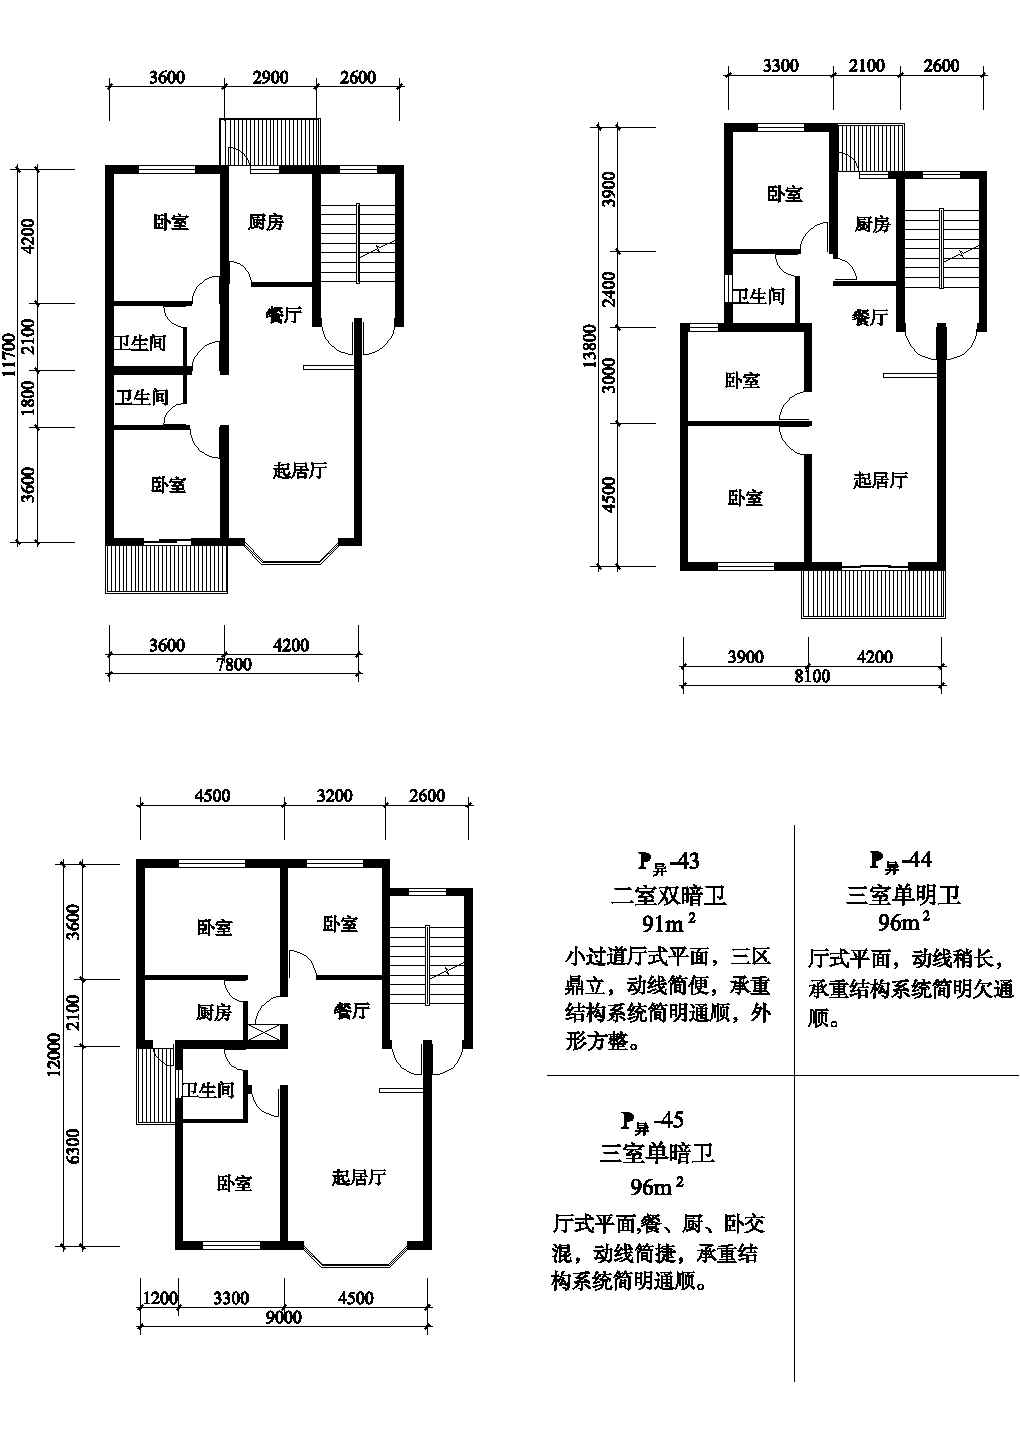 三室91/96/96平方单元式住宅平面图纸